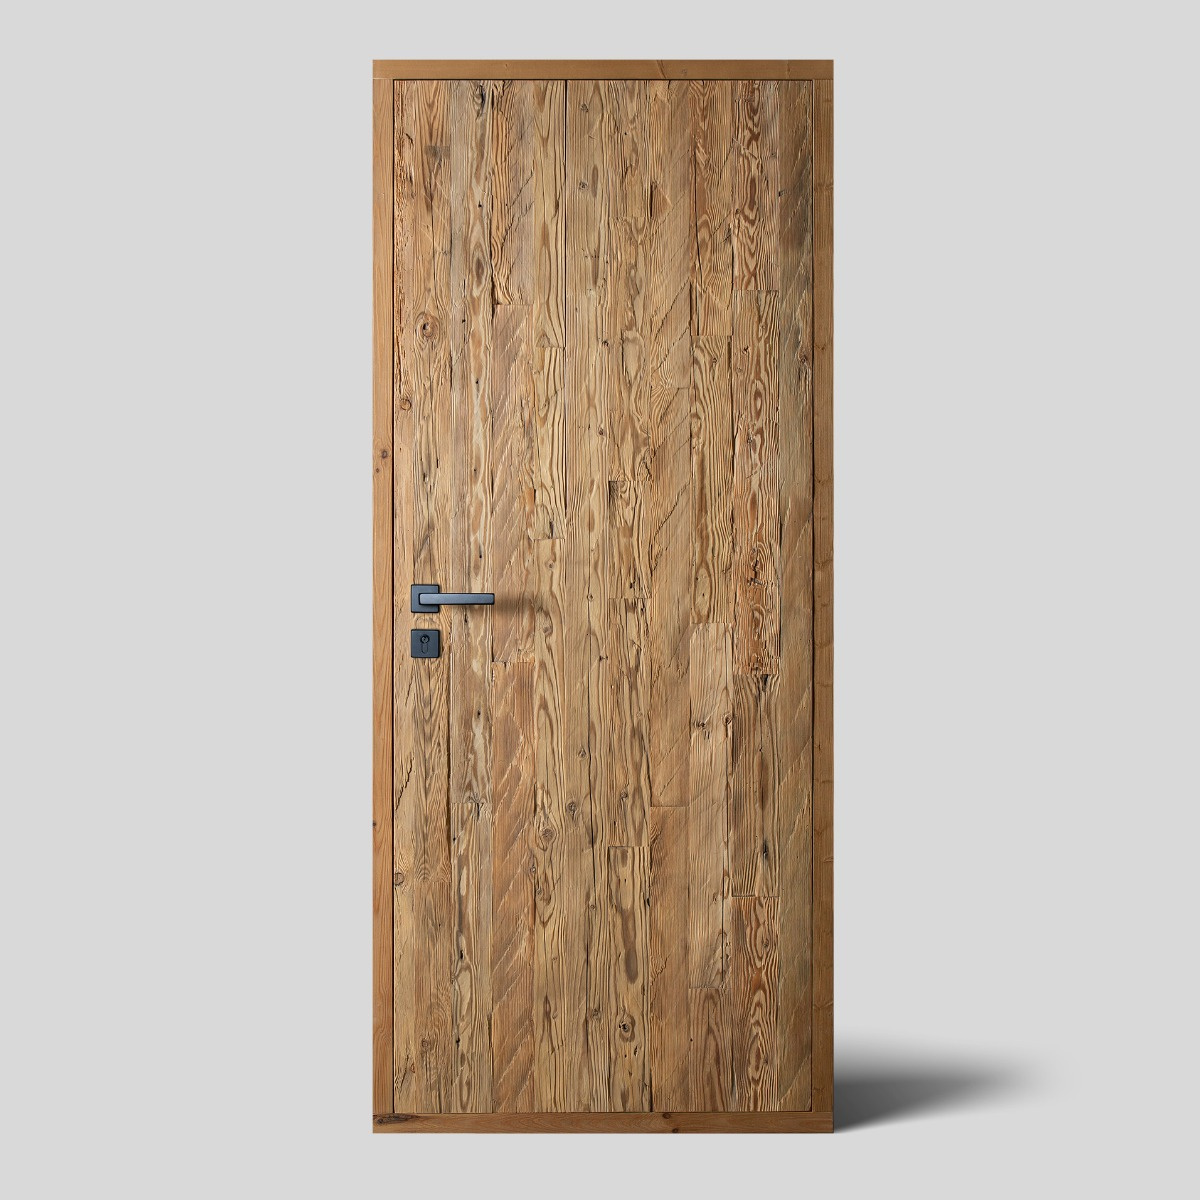 Hand-hewn wood door